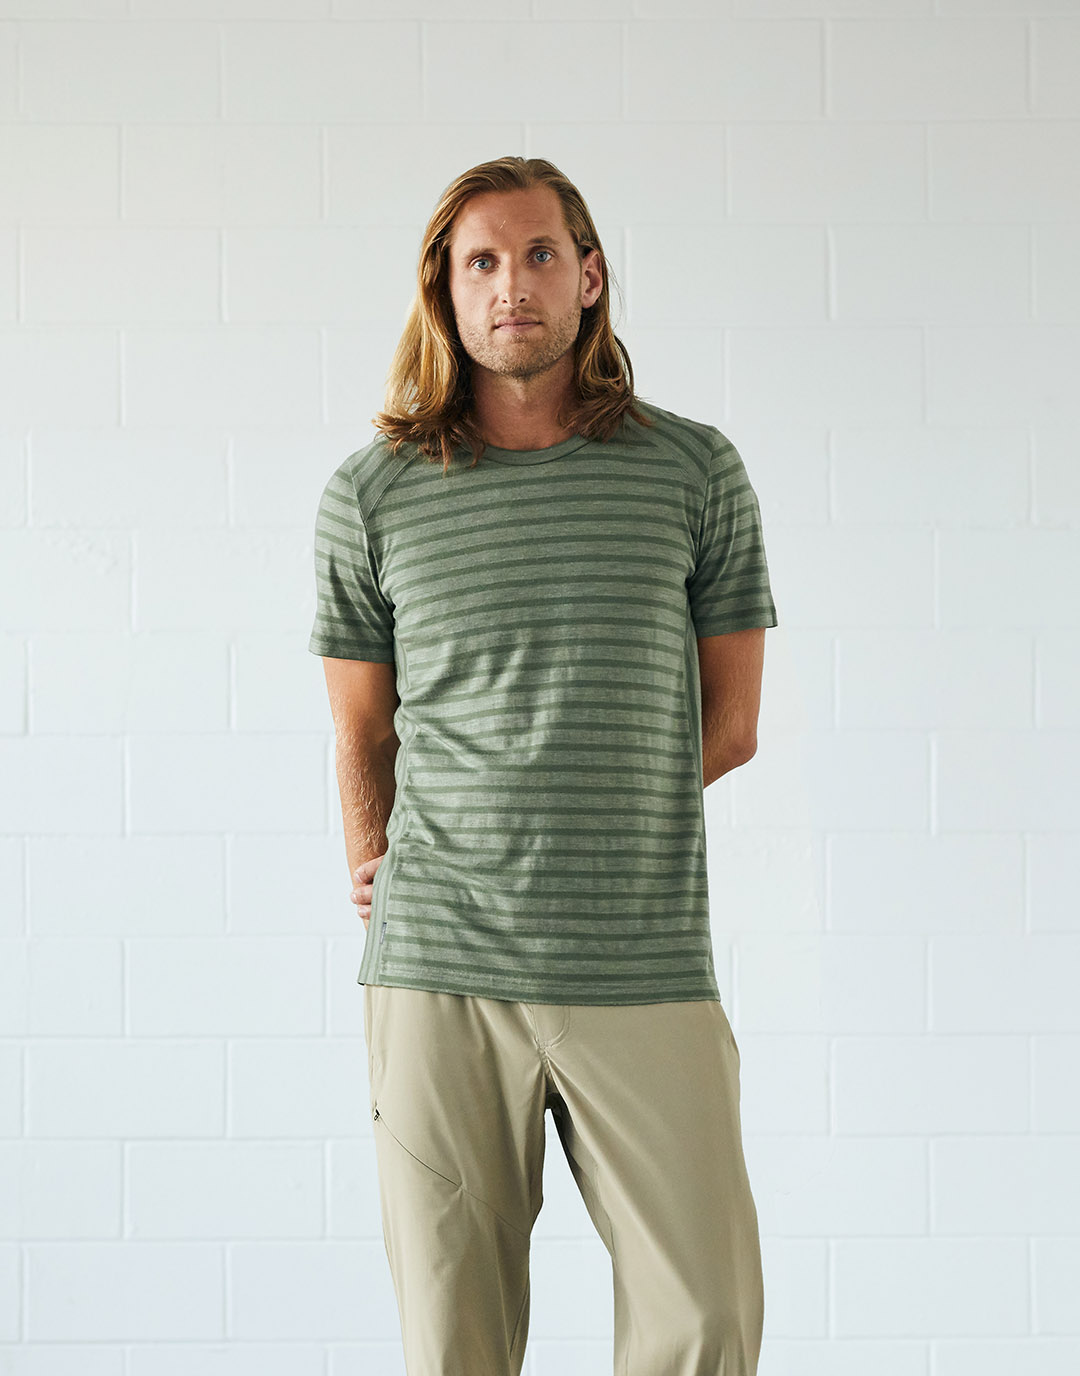 Un homme qui porte un t-shirt rayé vert et un pantalon kaki